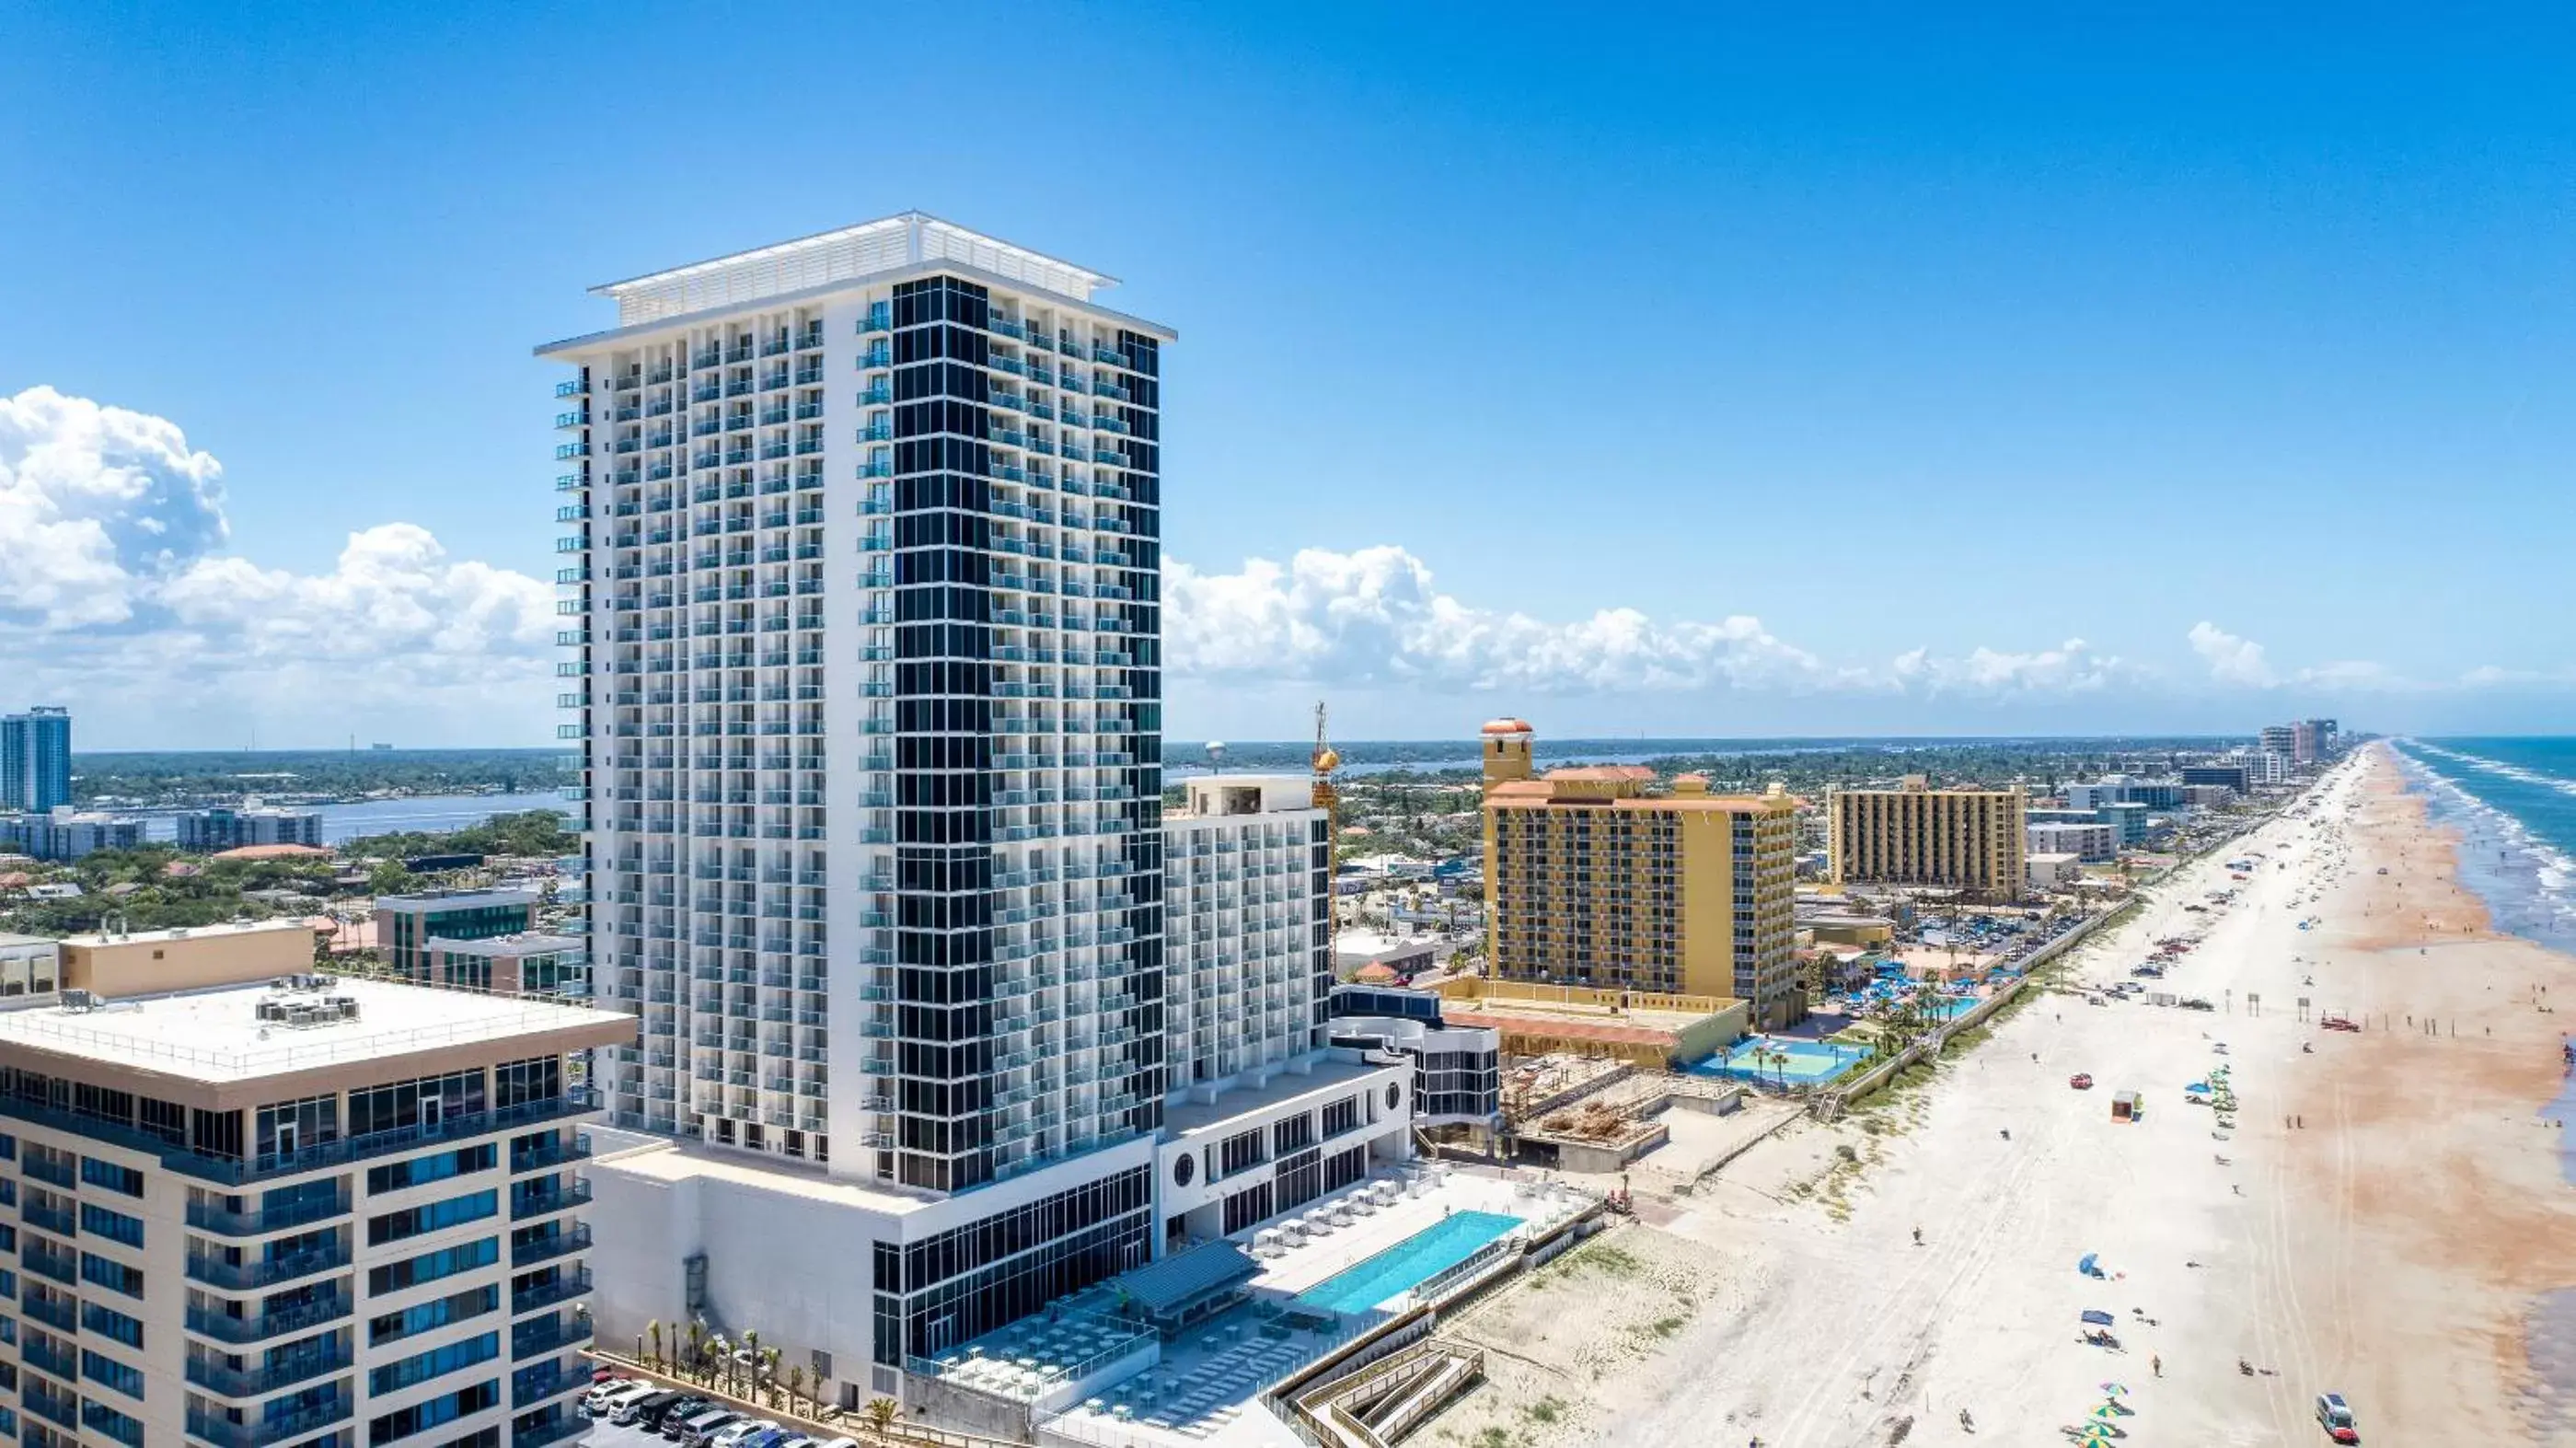 Property building in Daytona Grande Oceanfront Resort